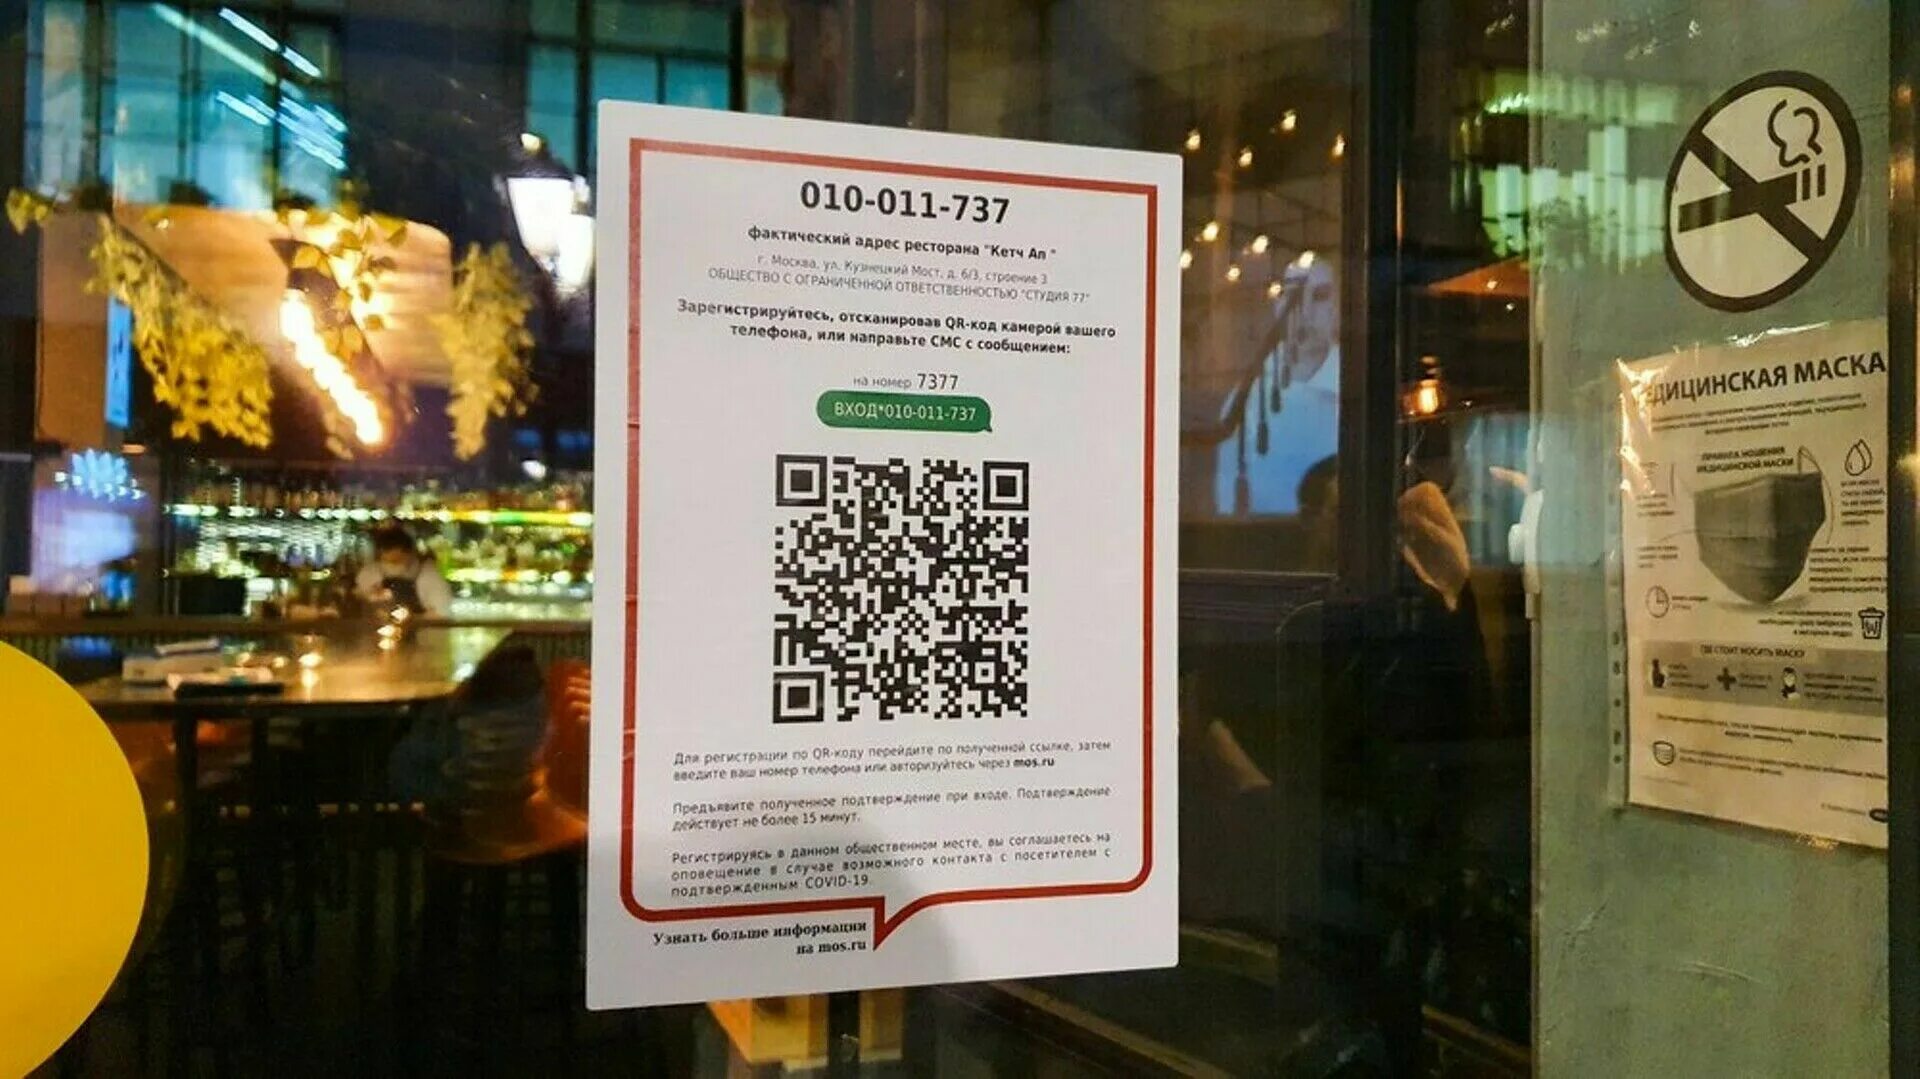 QR код. QR коды в ресторанах. QR-коды для посещения общественных мест. QR код для входа в ресторан.